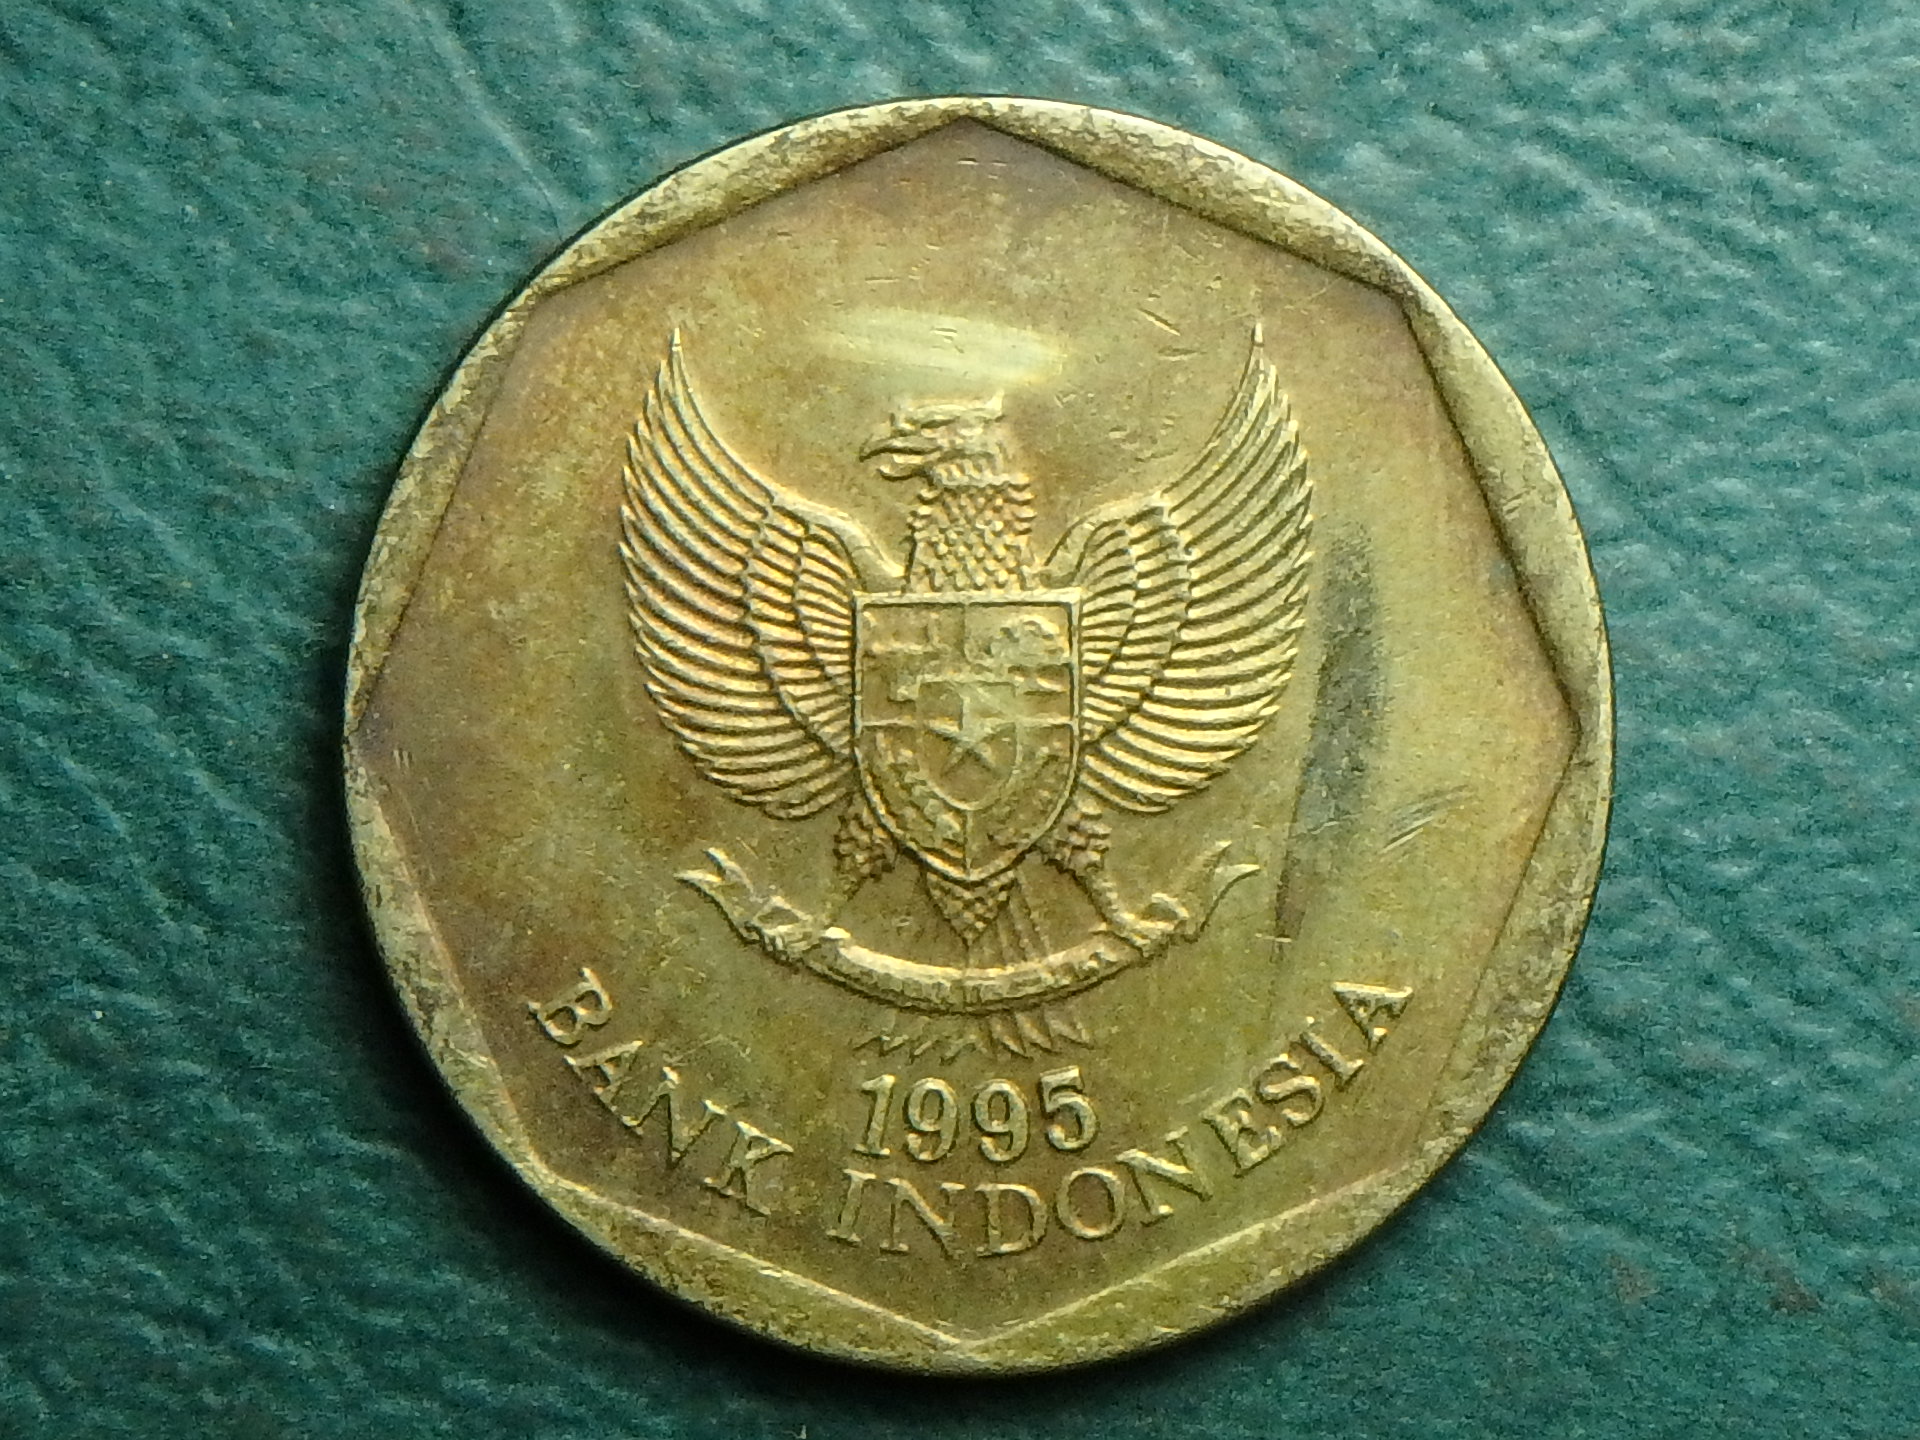 1995 ID 100 r obv (2).JPG